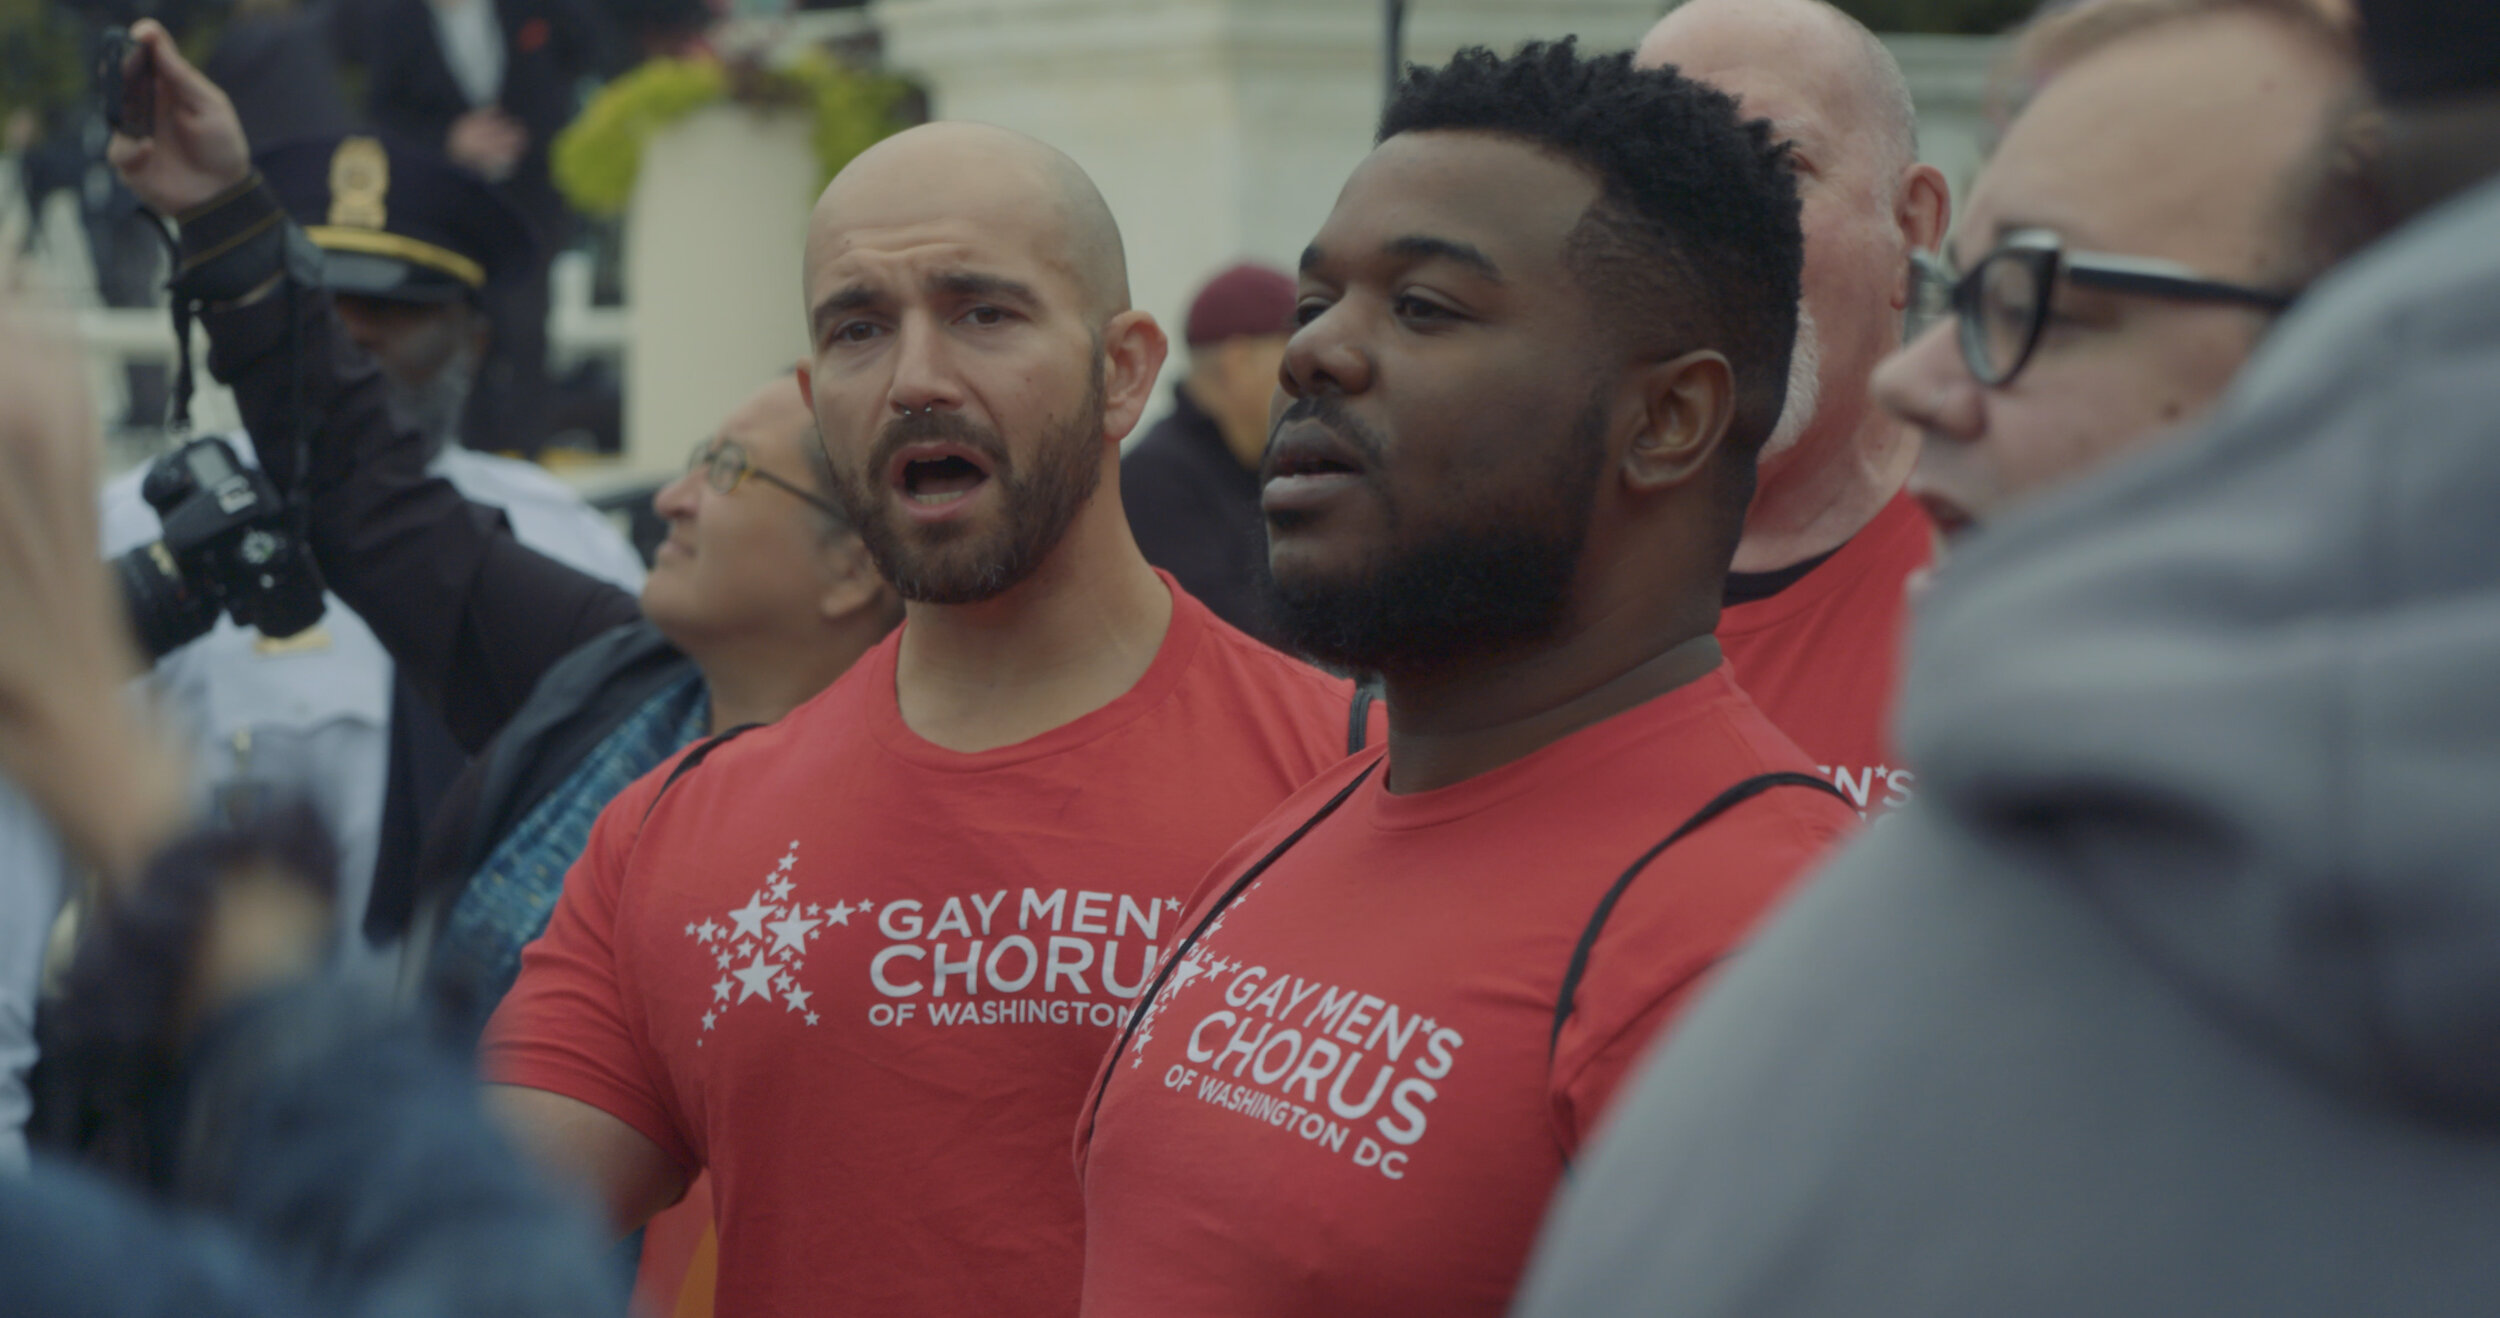 gay-mens-choir-scotus1.jpg